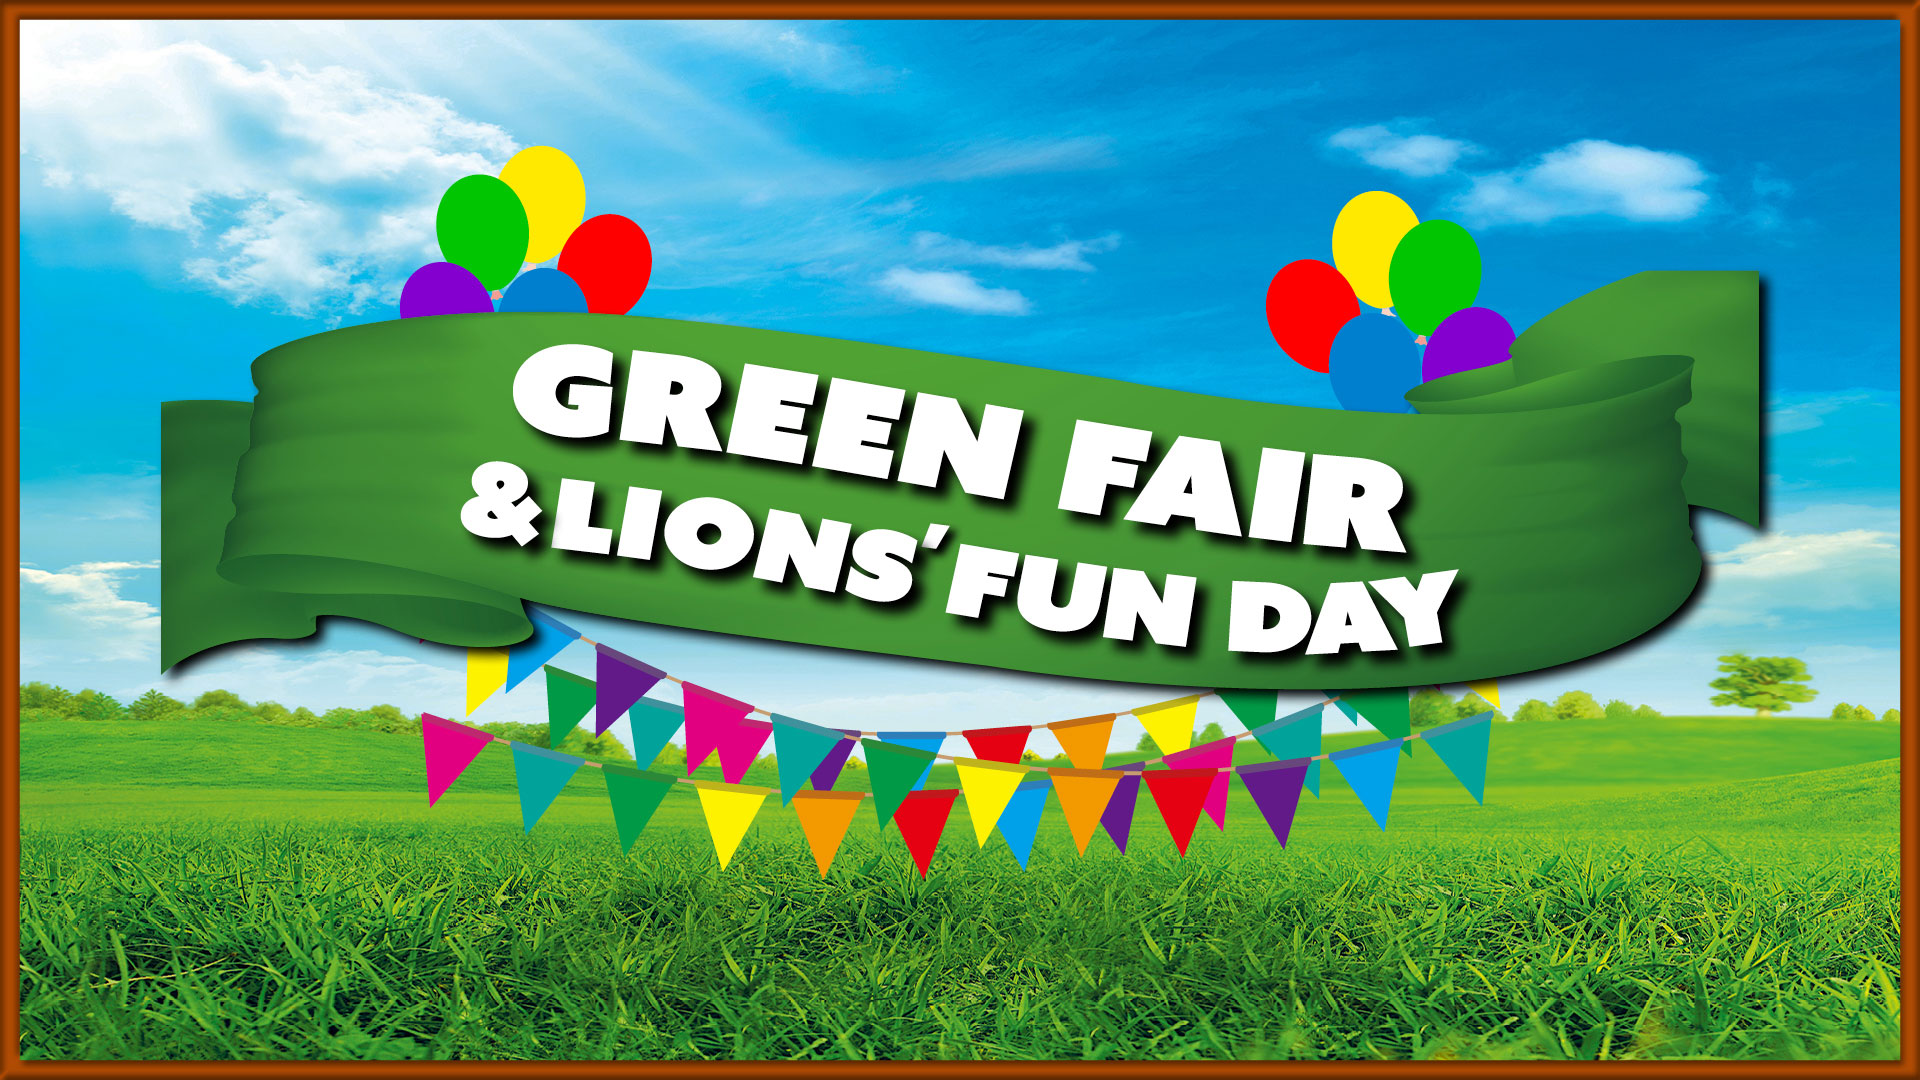 Green Fair and Lions' Fun Day Logo